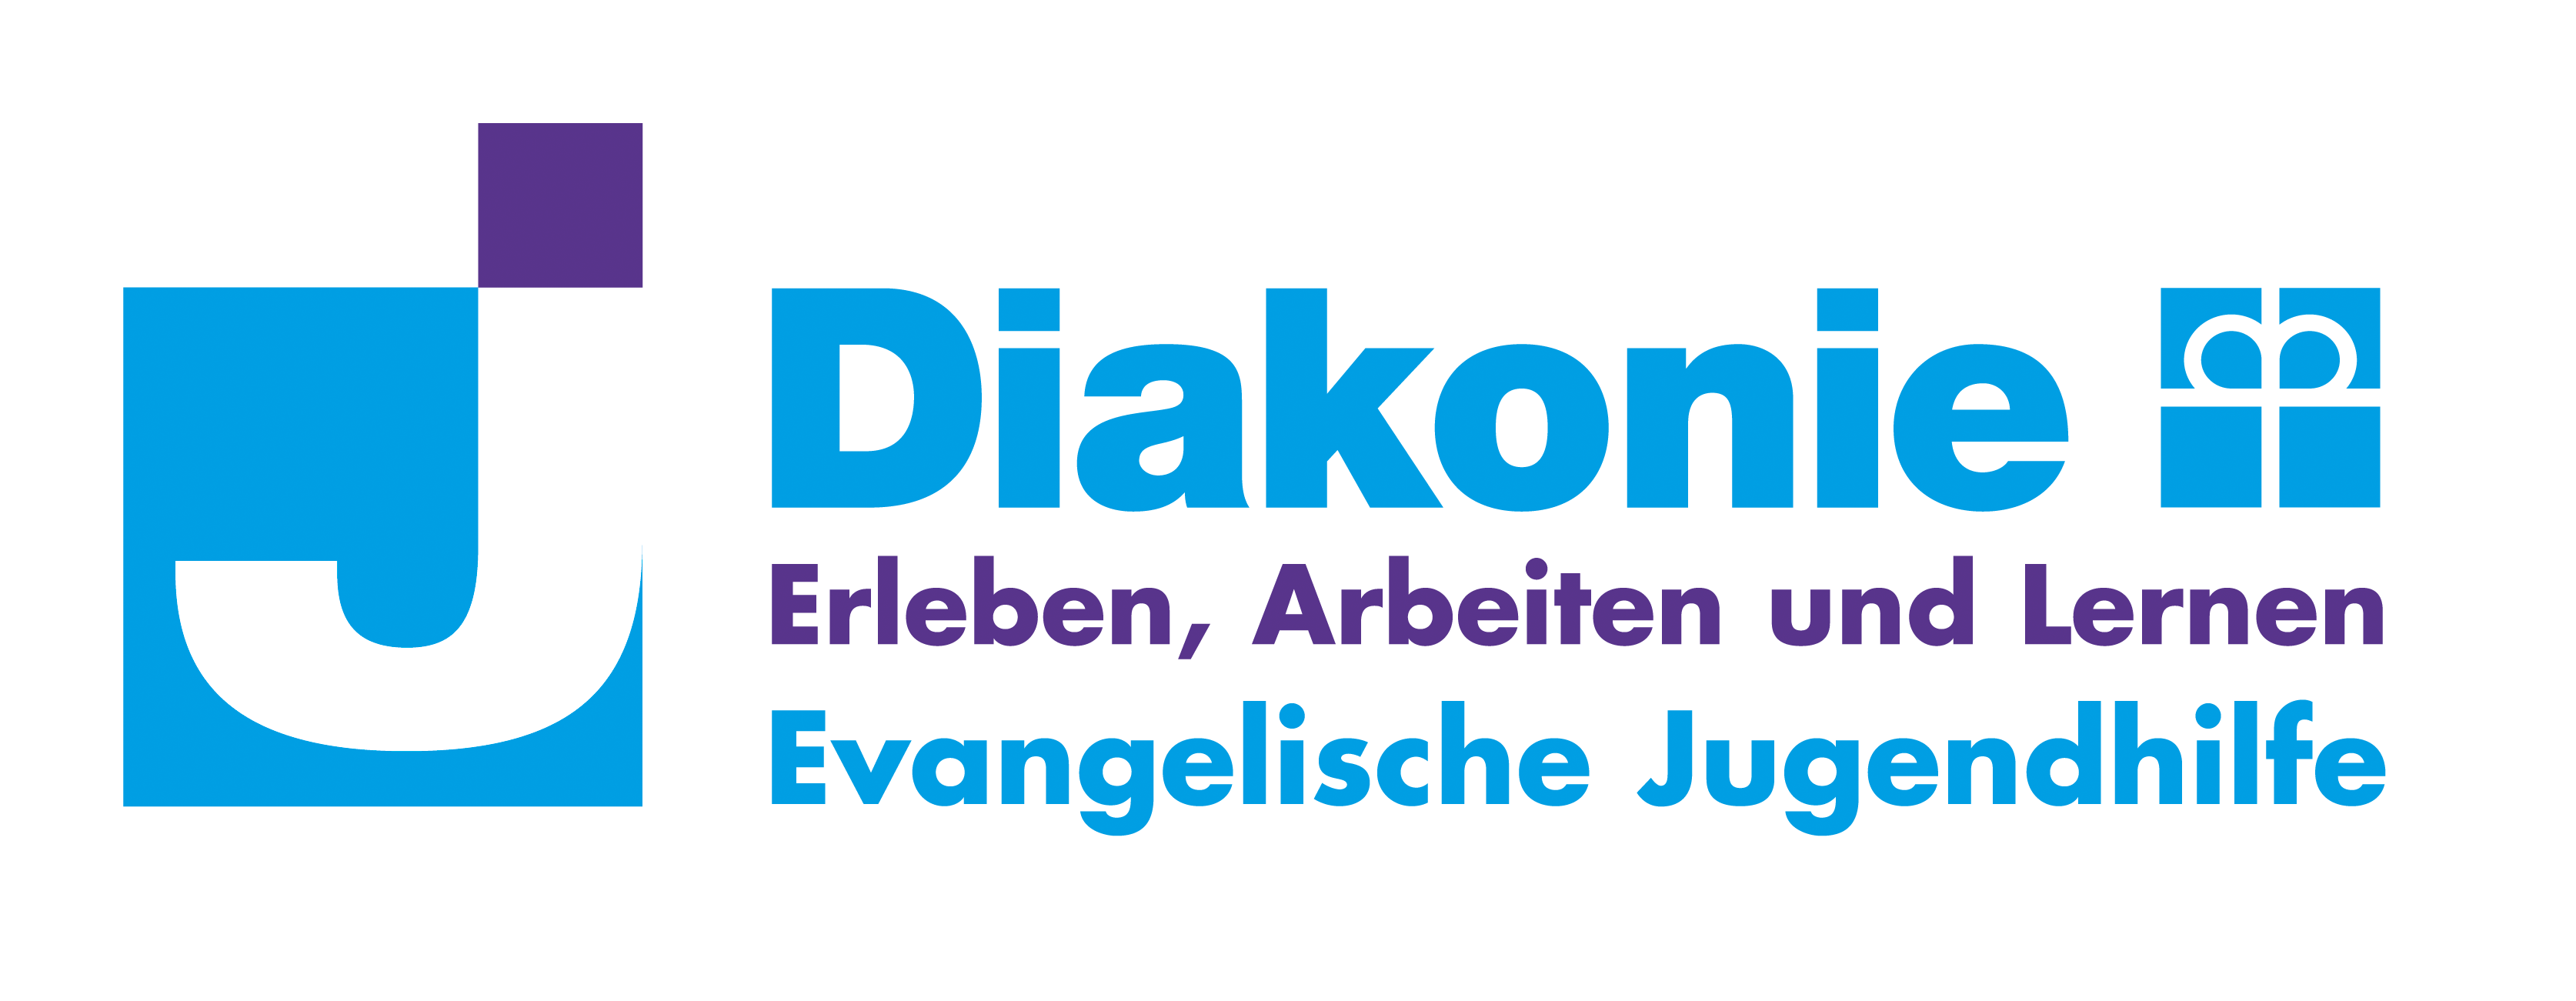 Erleben, Arbeiten und Lernen - Evangelische Jugendhilfe e.V.